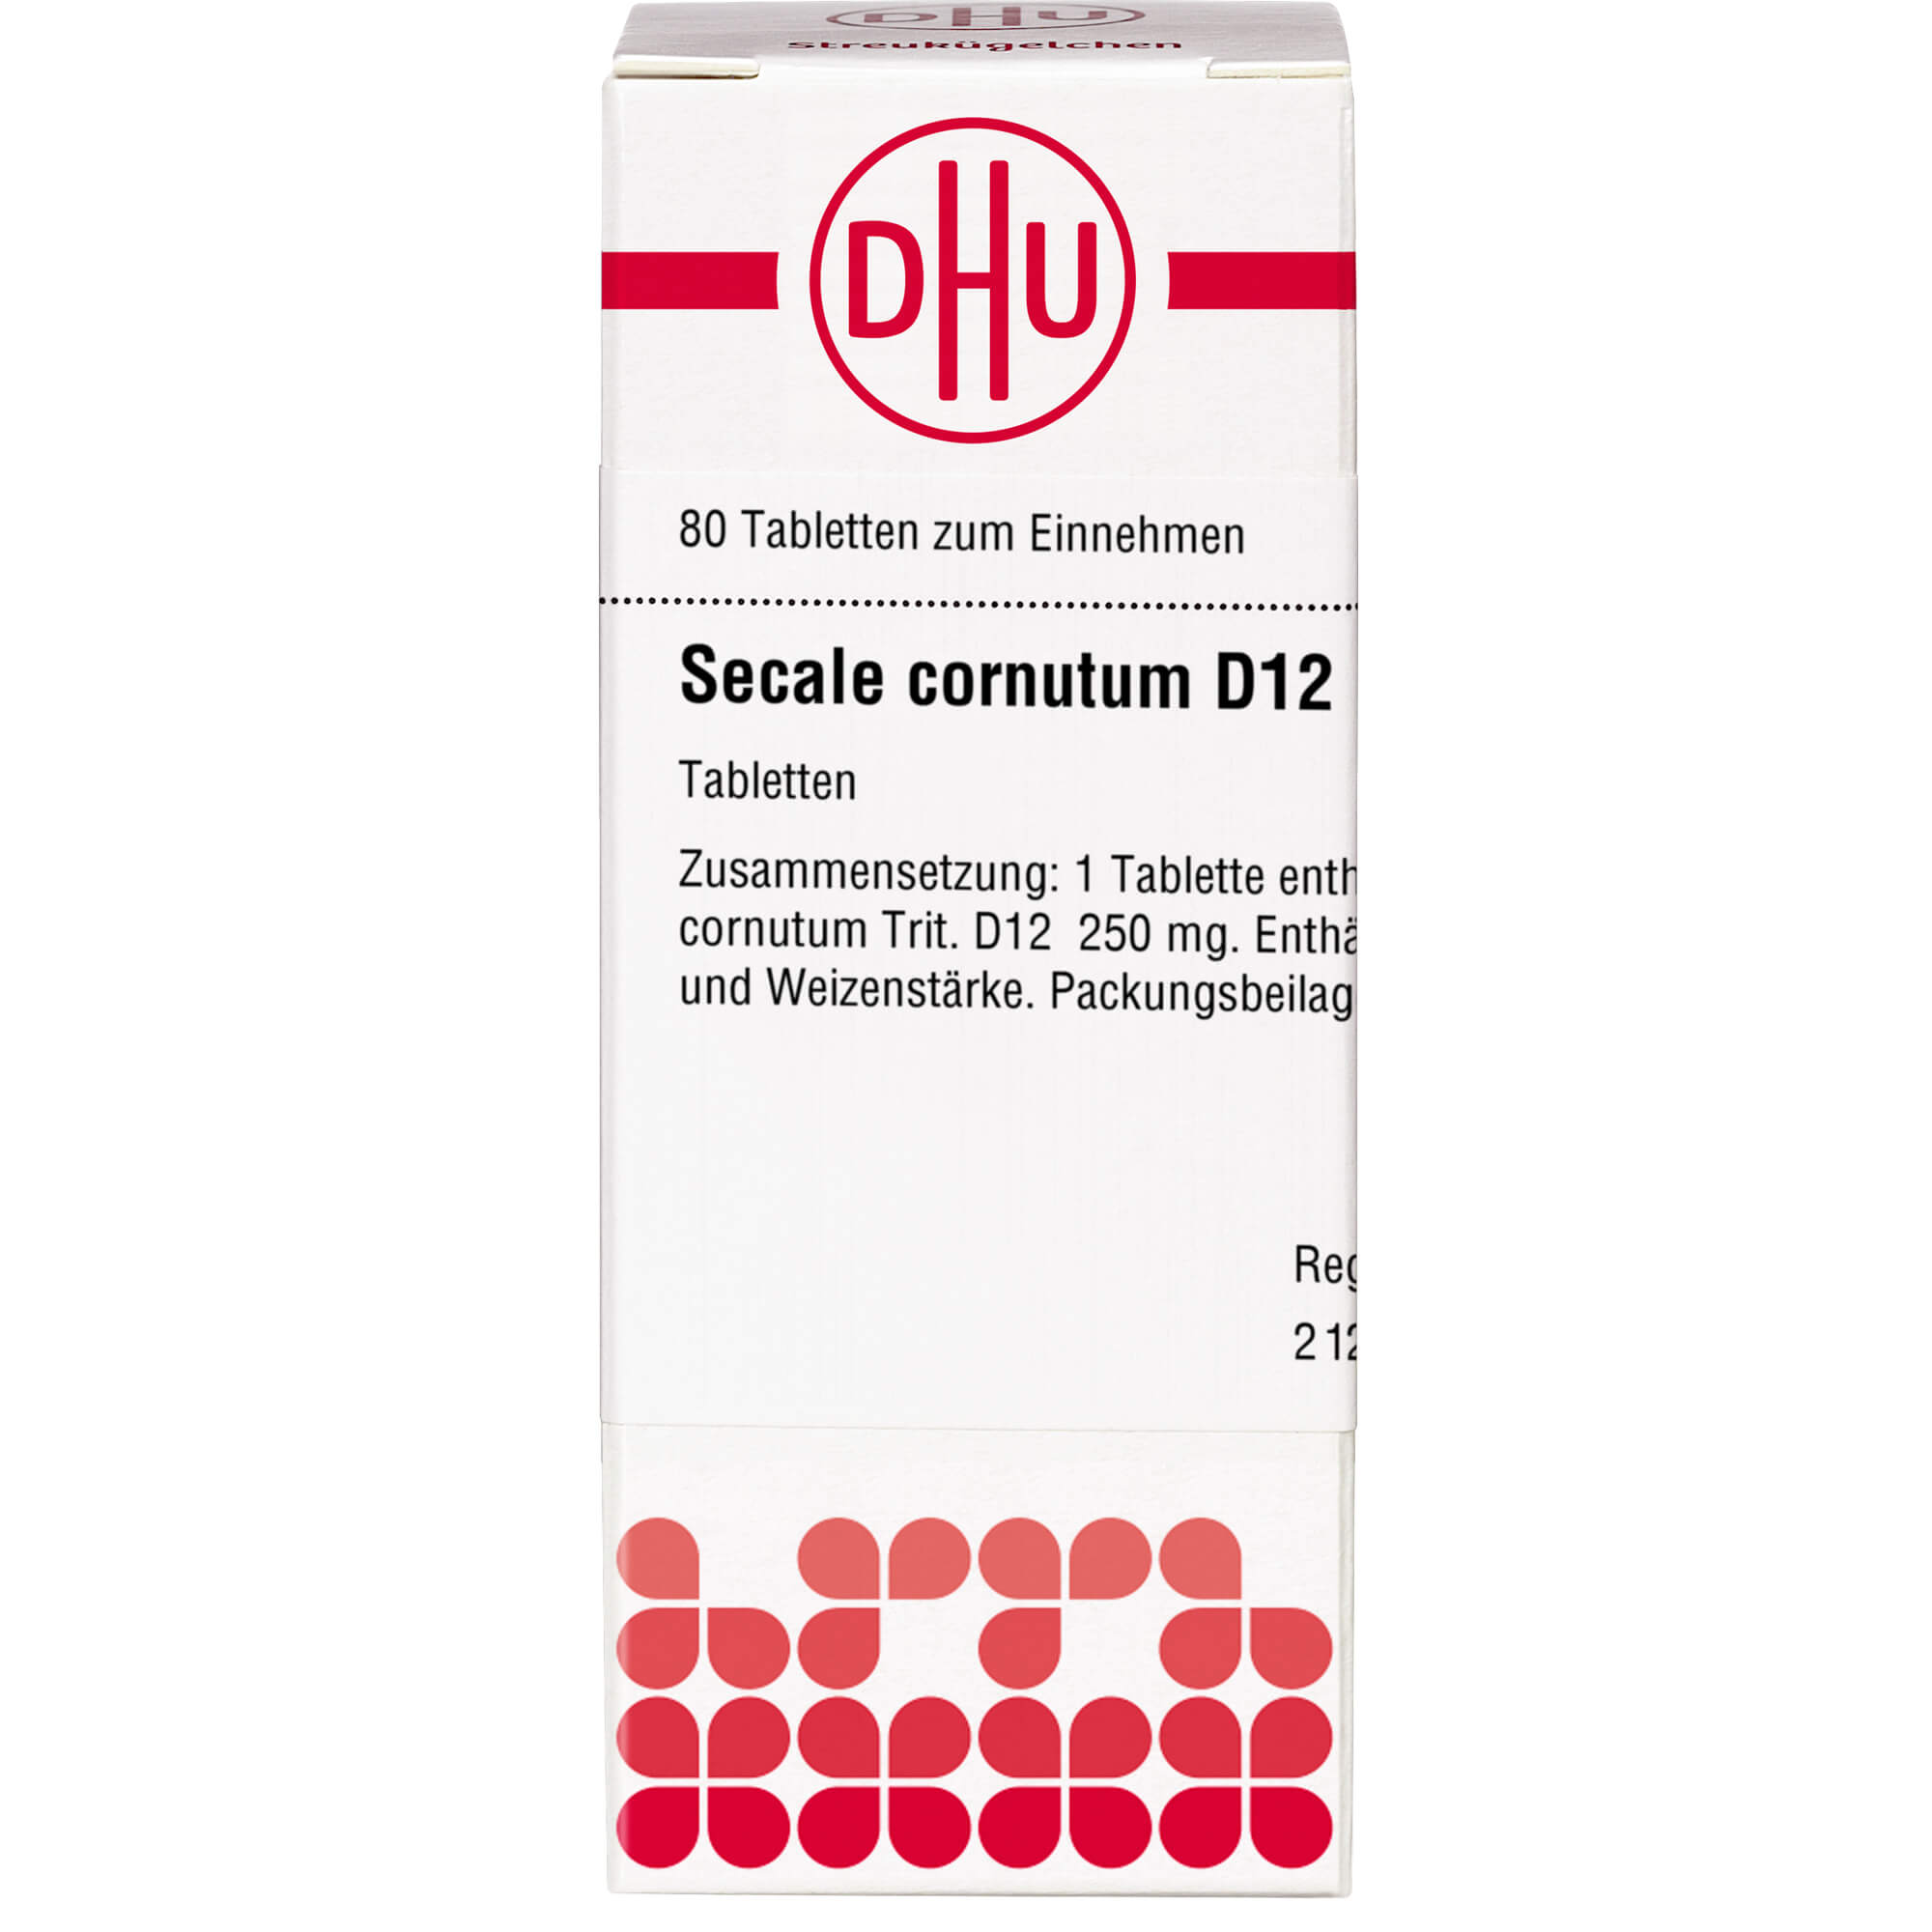 SECALE CORNUTUM D 12 Tabletten